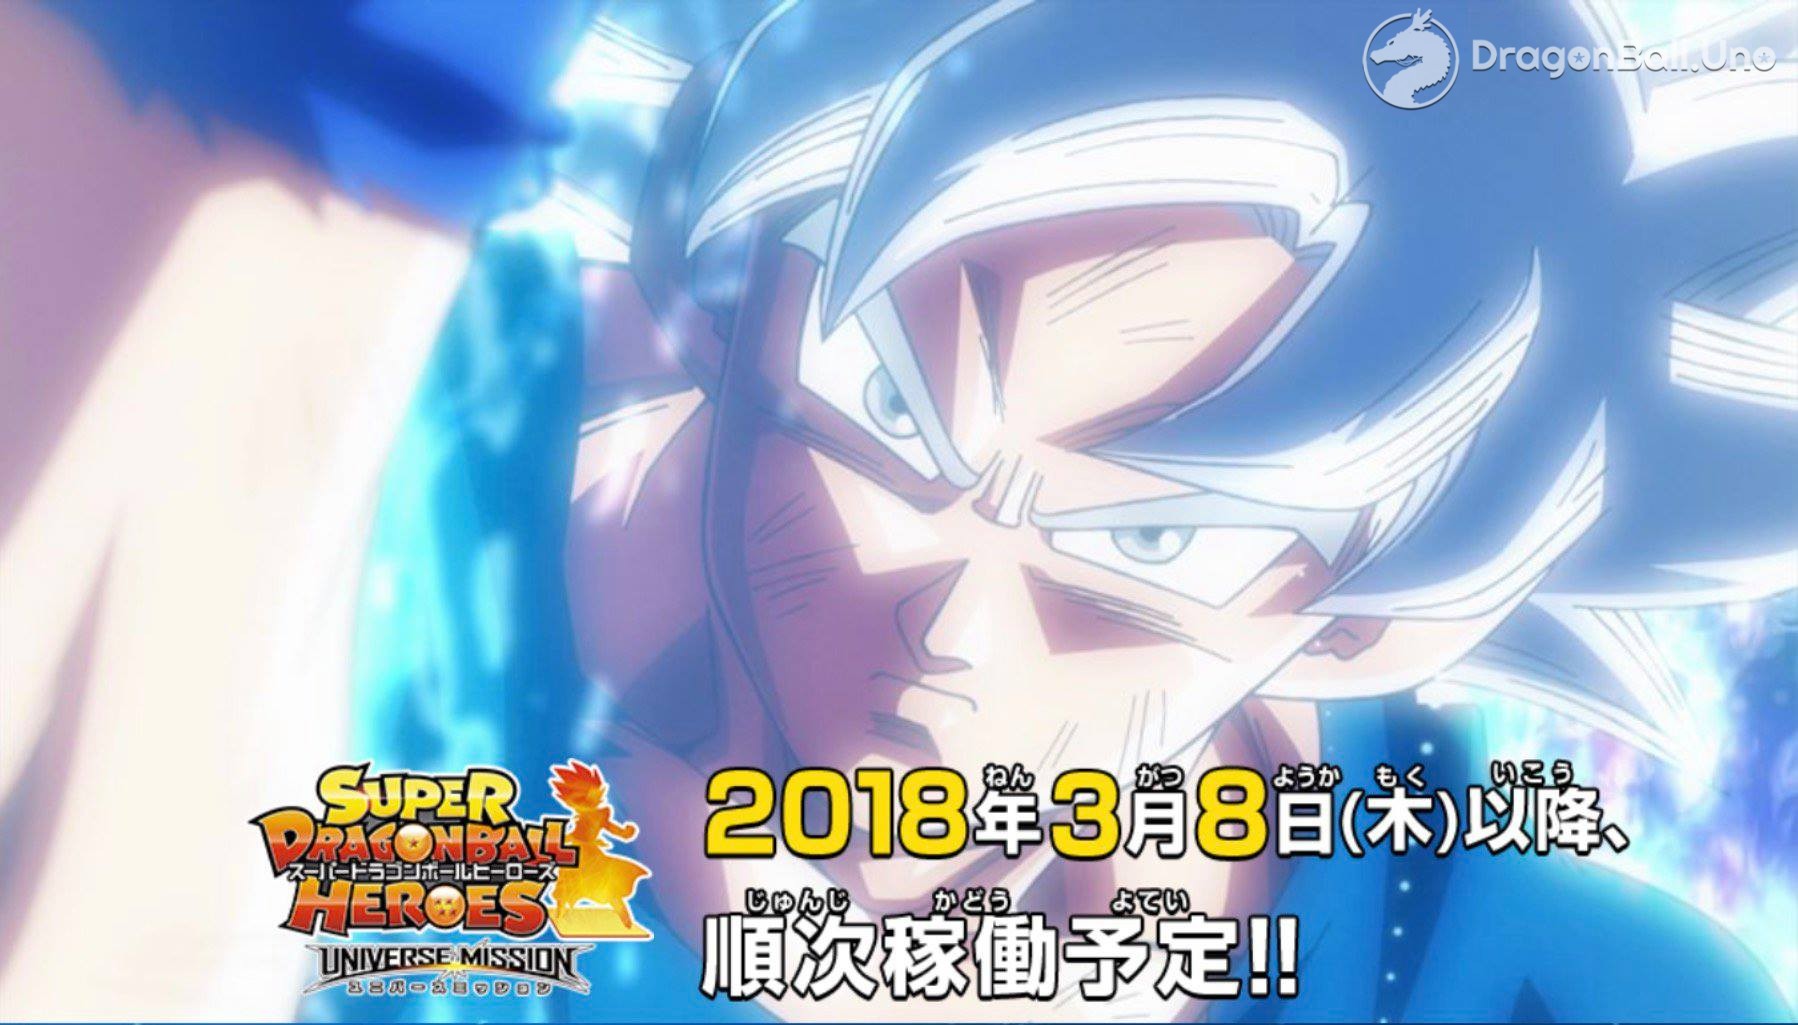 Dragon Ball Super Titulo Y Resumen Para El Capitulo 129 De Dbs Por Fuji Tv Dragonball Uno